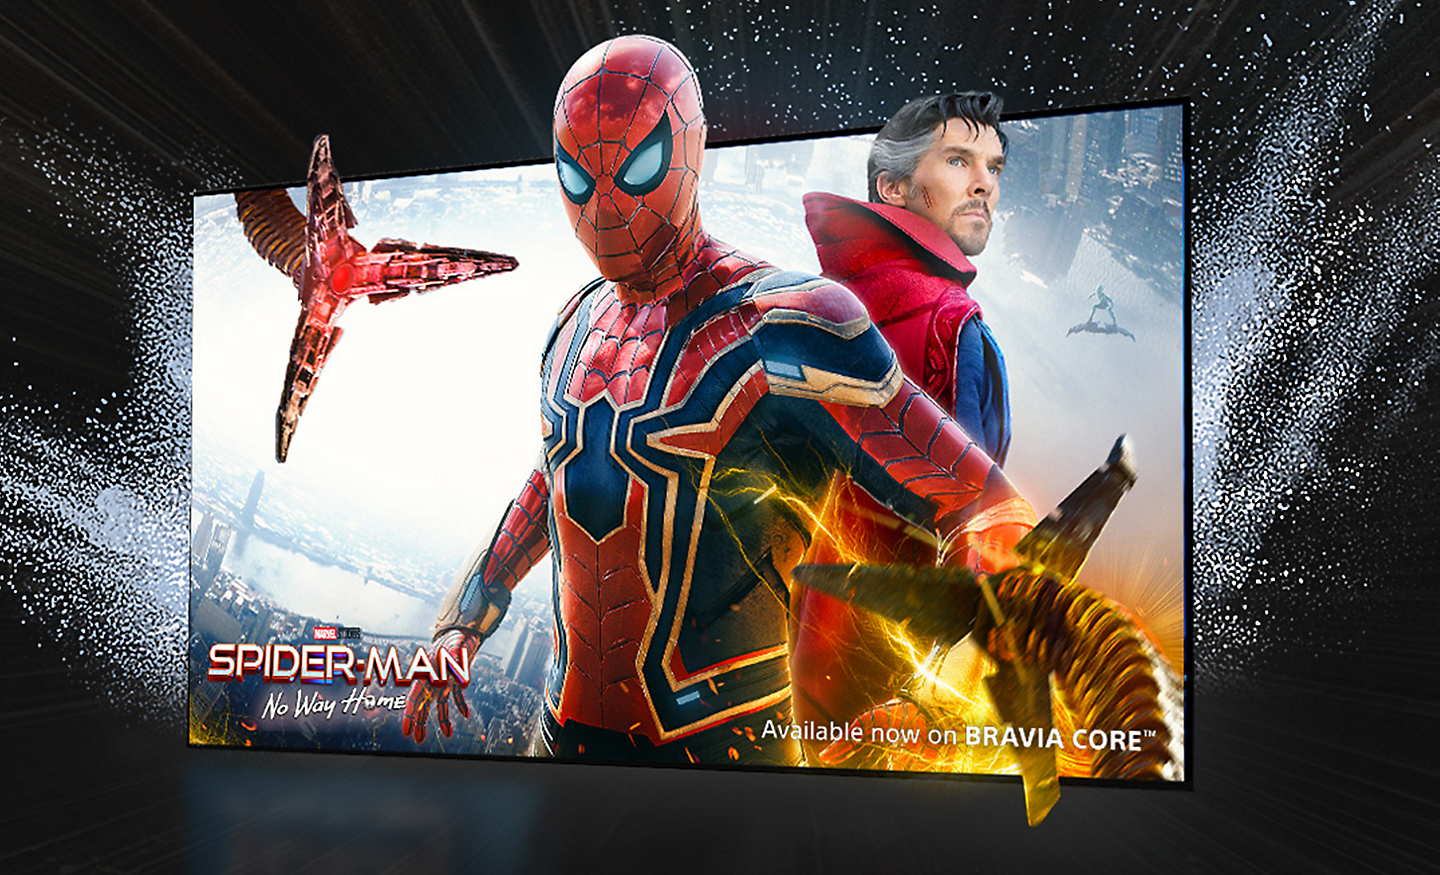 TV-skjerm som viser filmen SPIDER-MAN No Way Home, hvor Spider-man strekker seg ut av skjermen